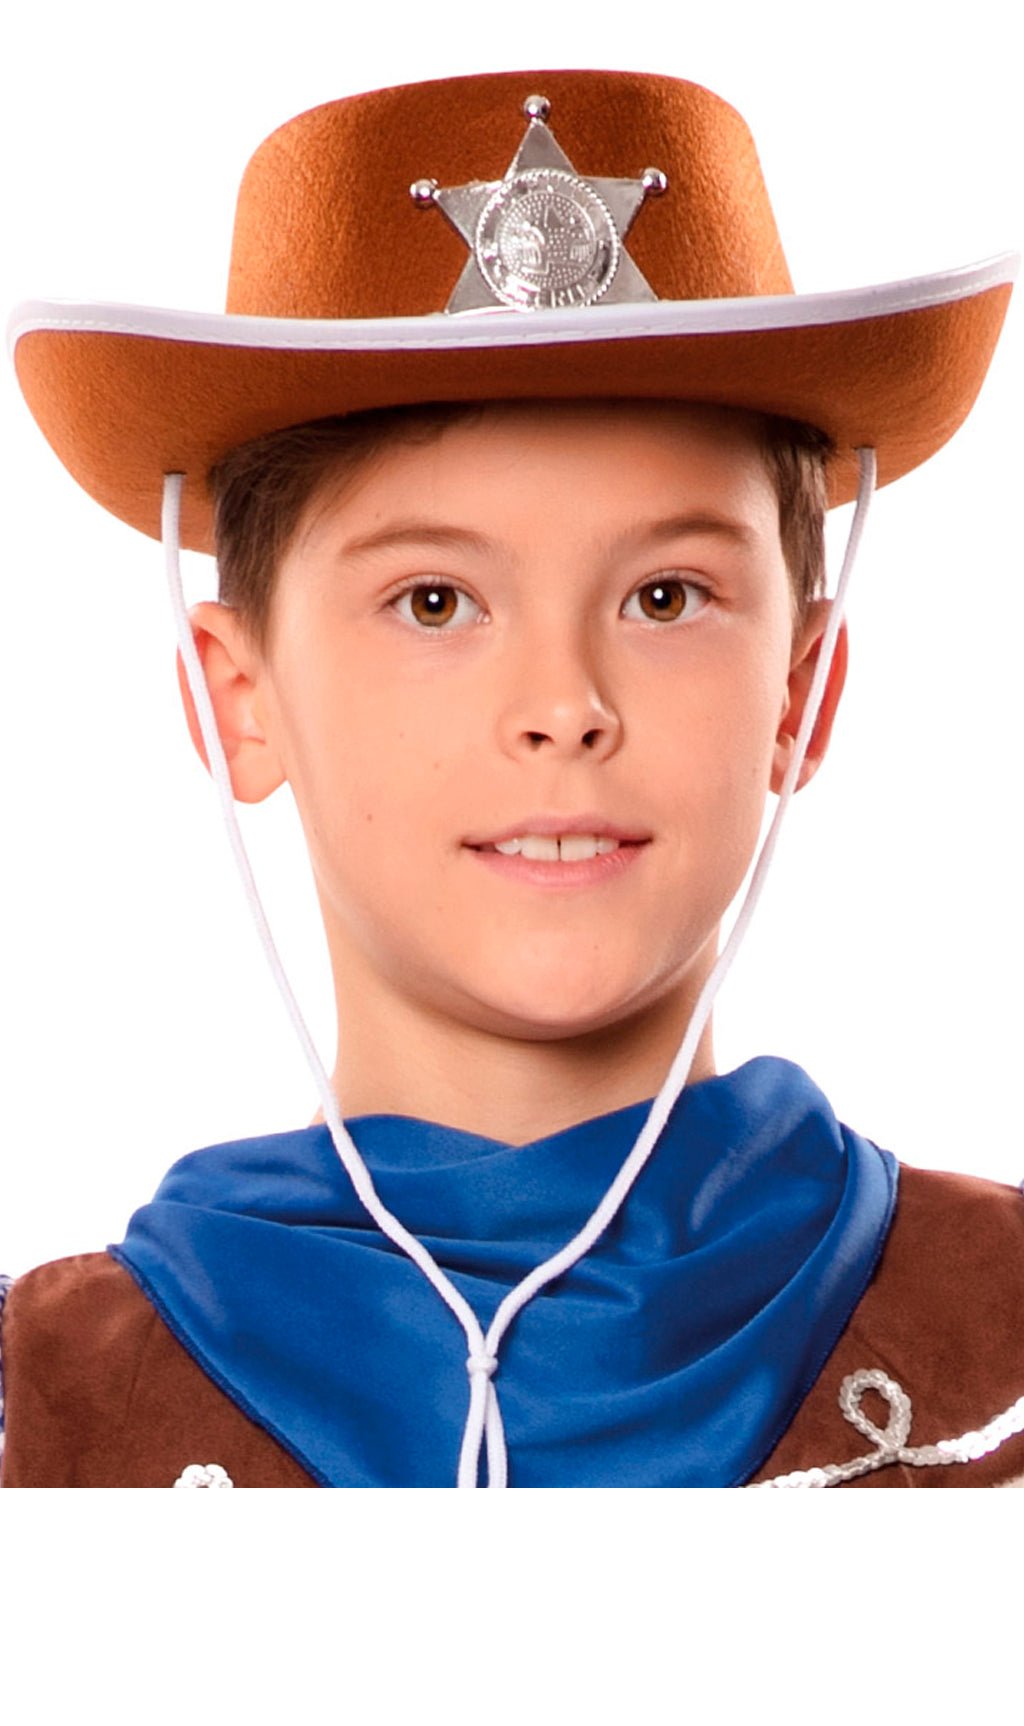 Comprar online Sombrero Vaquero Marrón para niños